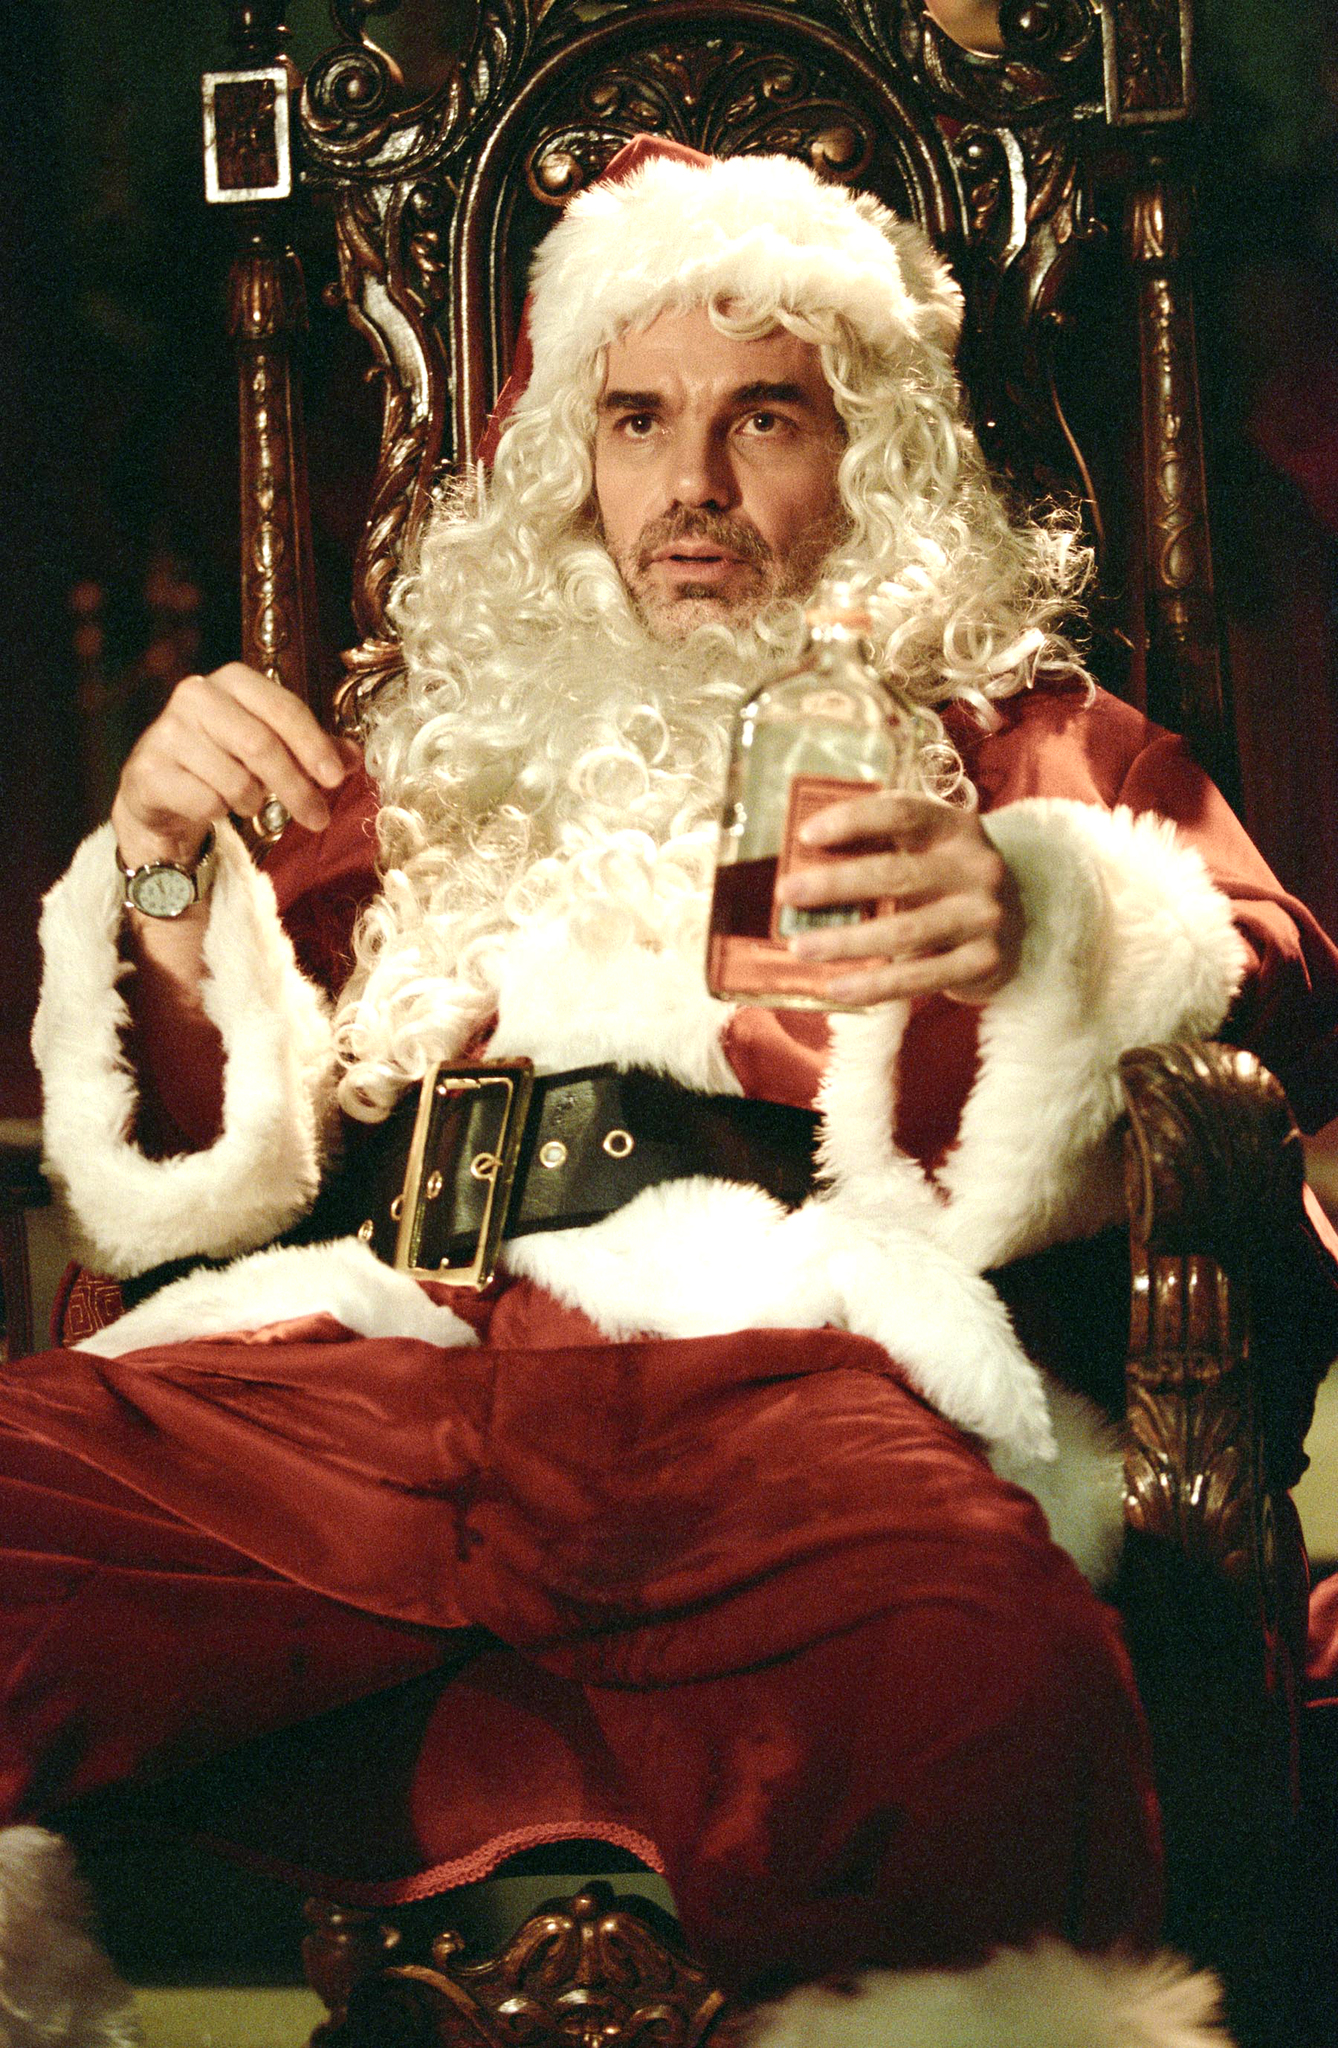 Still of Billy Bob Thornton in Bad Santa (2003)